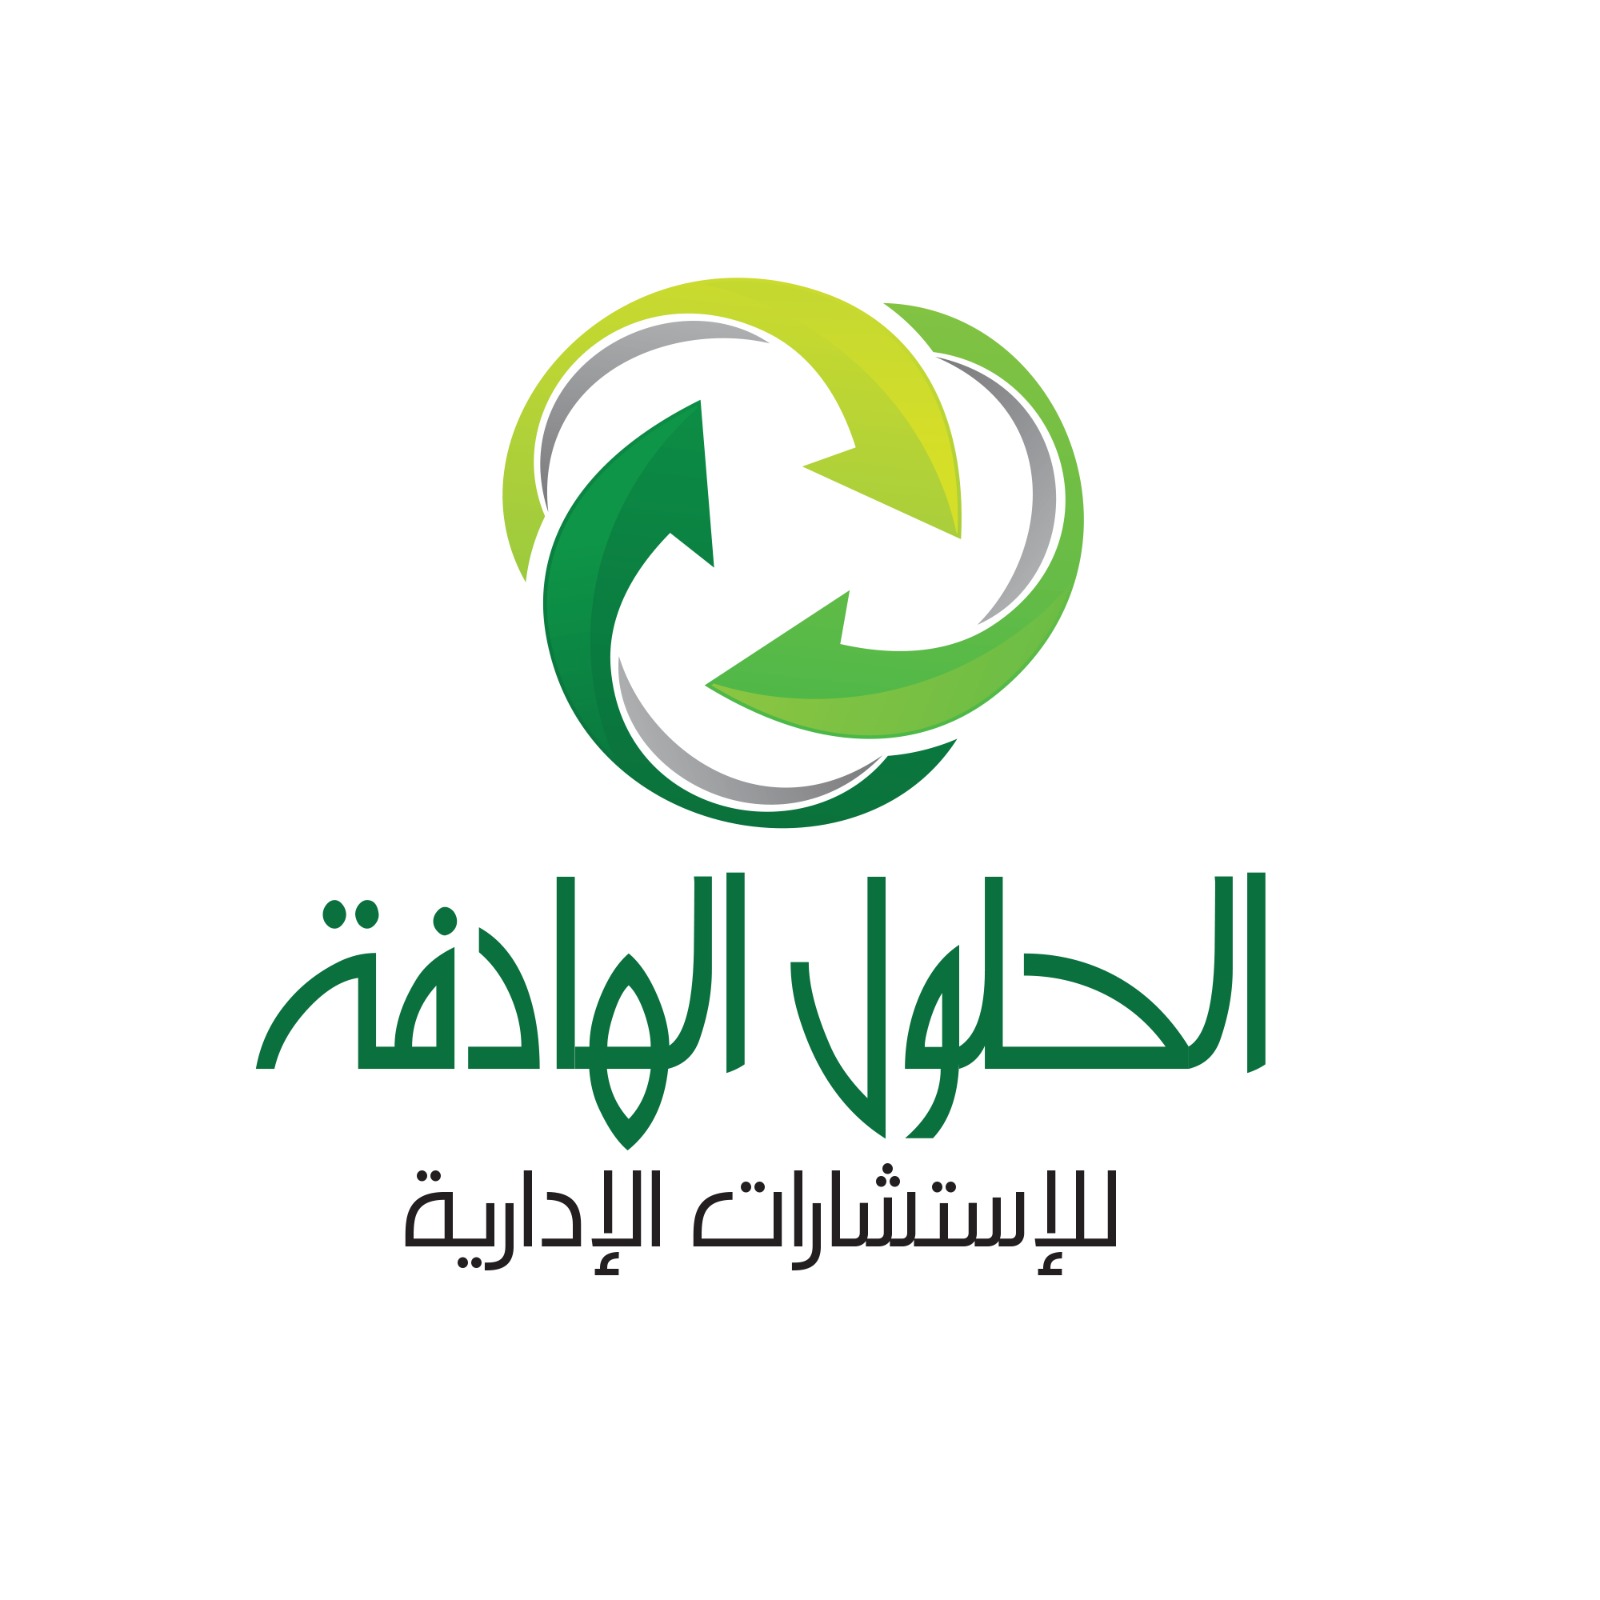 الحلول الهادفة  : نهدف  إلى المساهمة في رفع جودة الخدمات في مدن السعودية تماشيا مع رؤية ٢٠٣٠